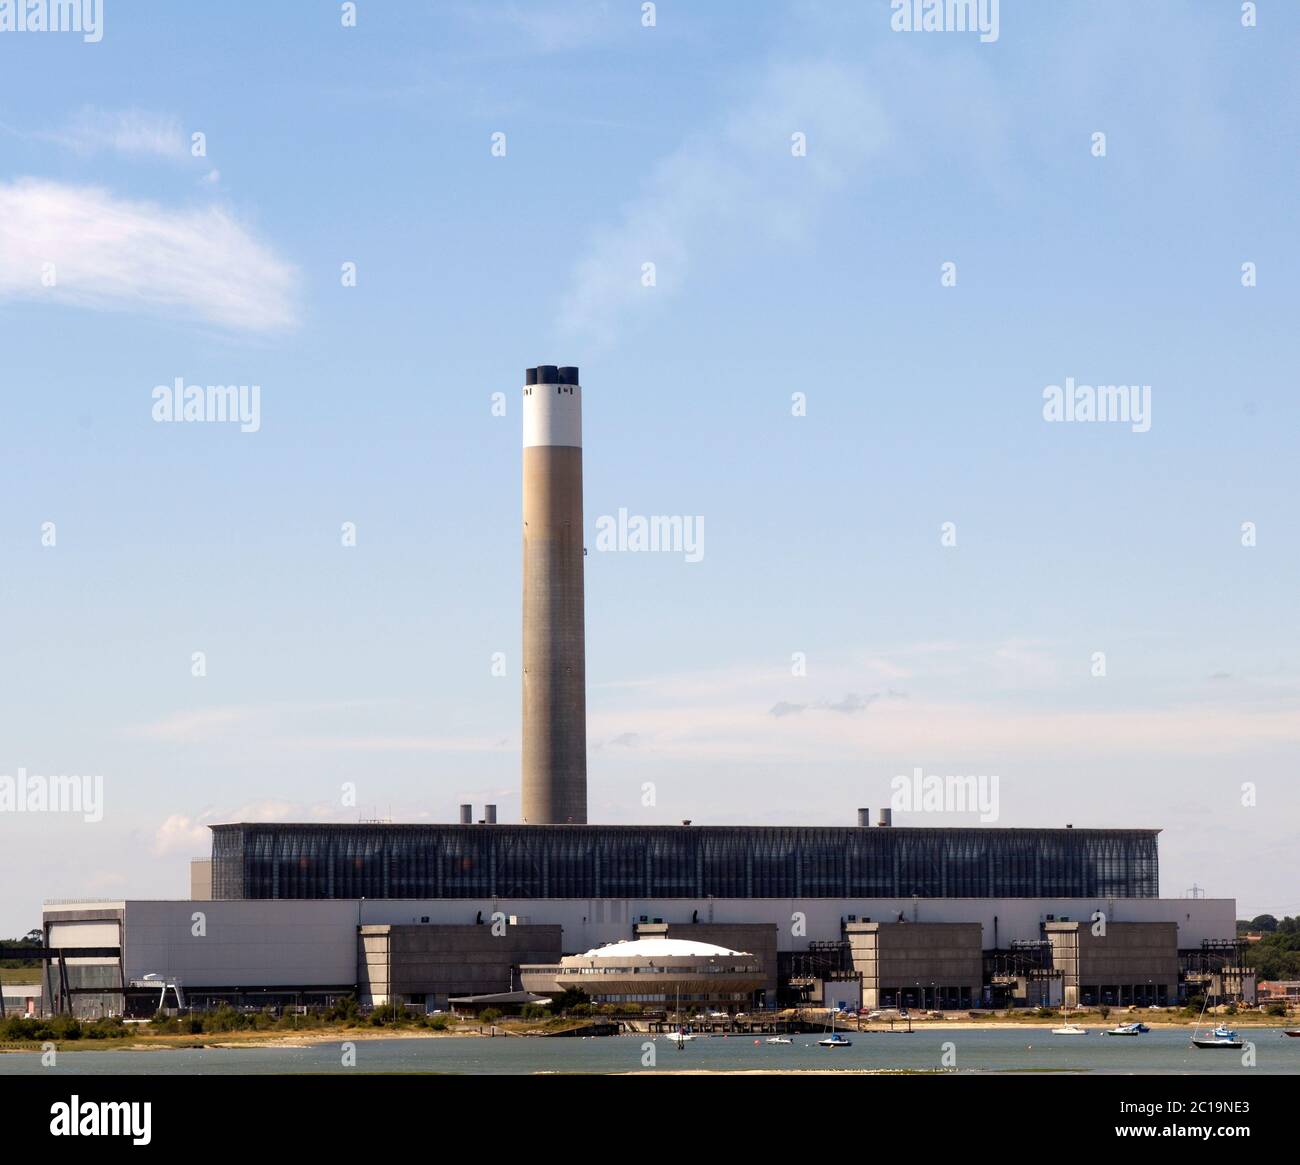 Fawley Power Station - jetzt stillgelegt - und abgerissen, Fawley, Hampshire, England, Großbritannien Stockfoto